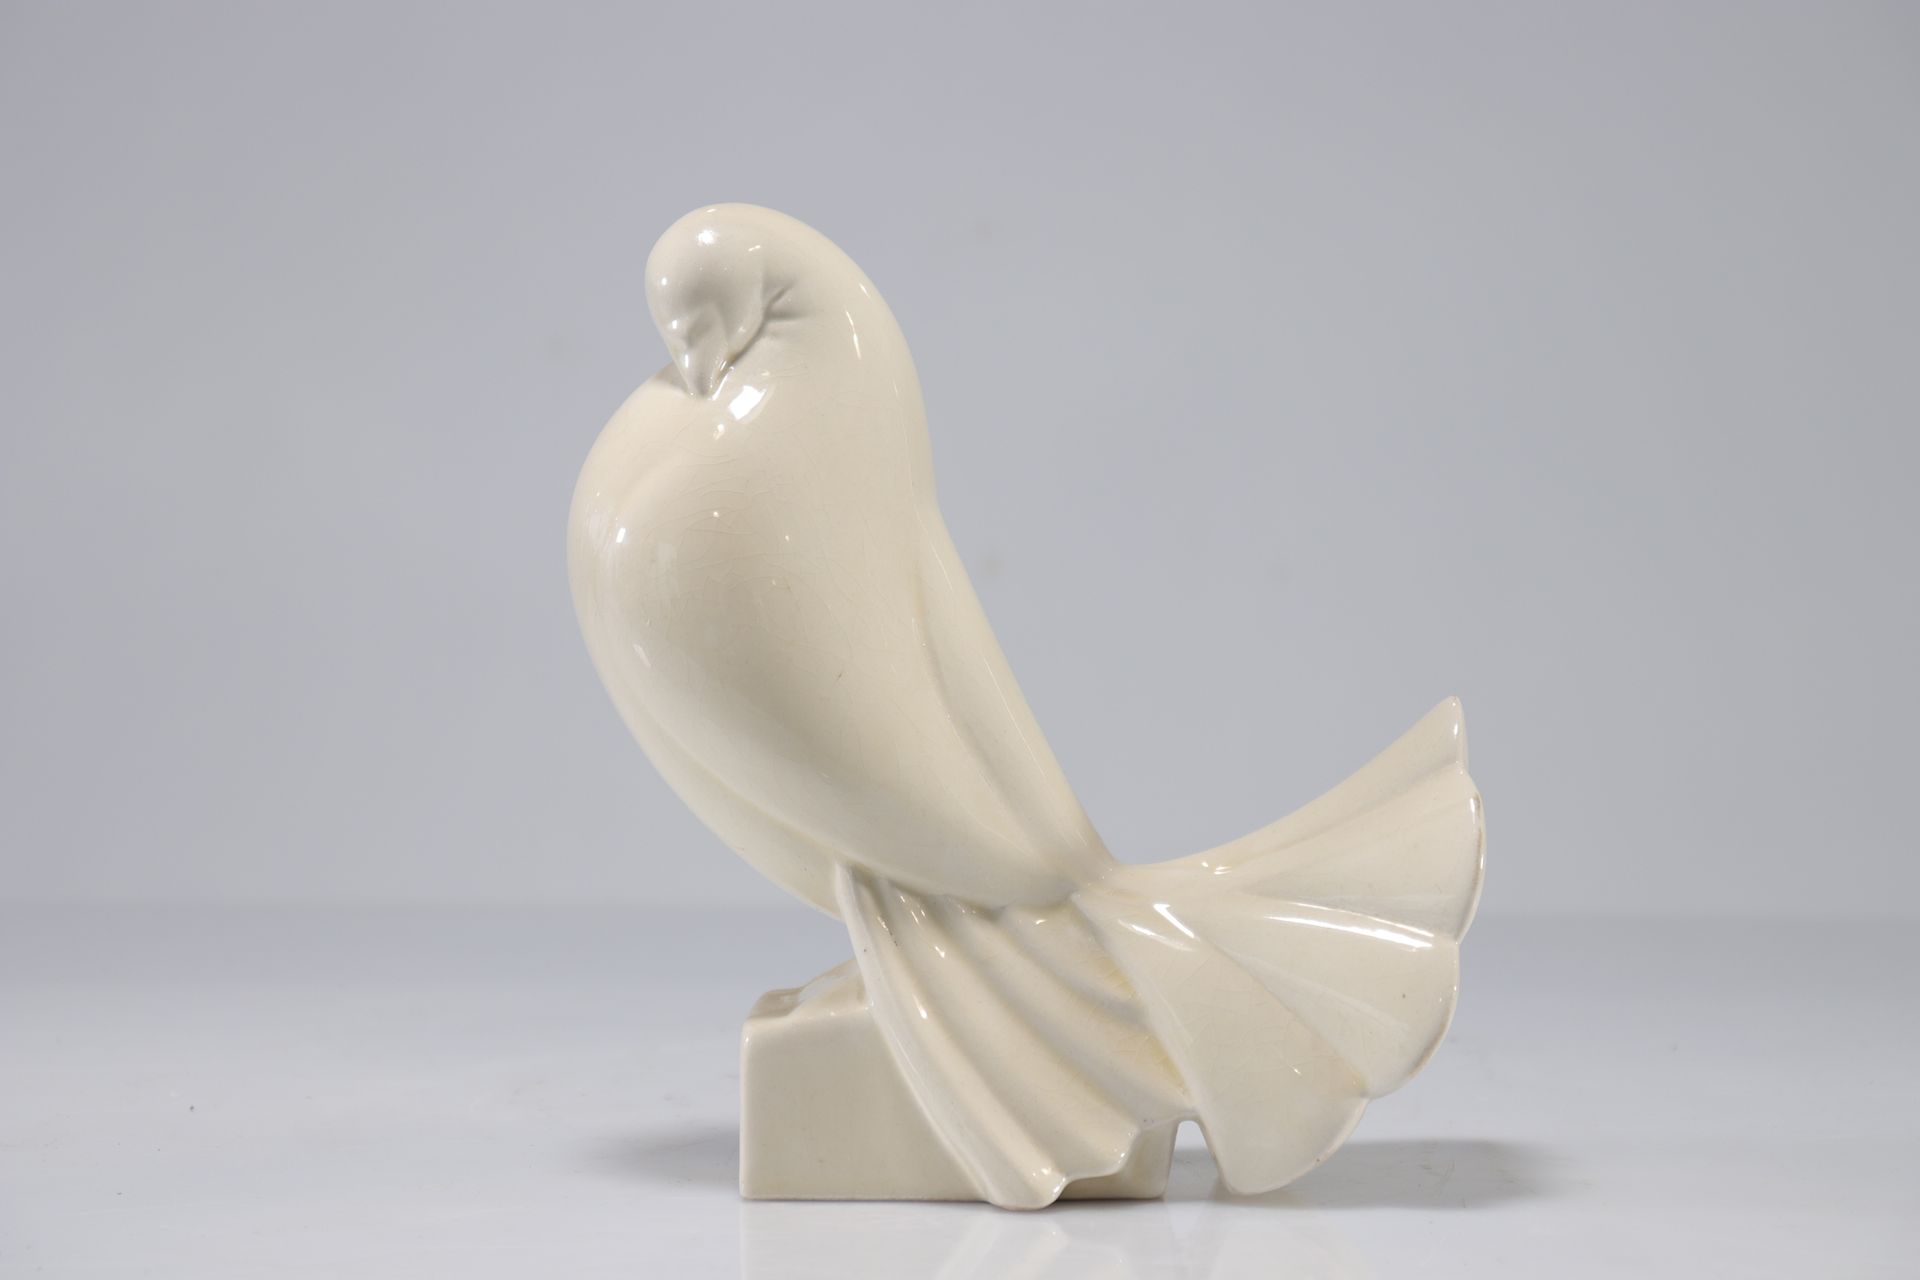 Null Jean et Jacques ADNET (1900-1984) - 裂纹象牙白陶瓷鸽子。
重量: 570克
地区: 法国
尺寸: 高200毫米，宽&hellip;